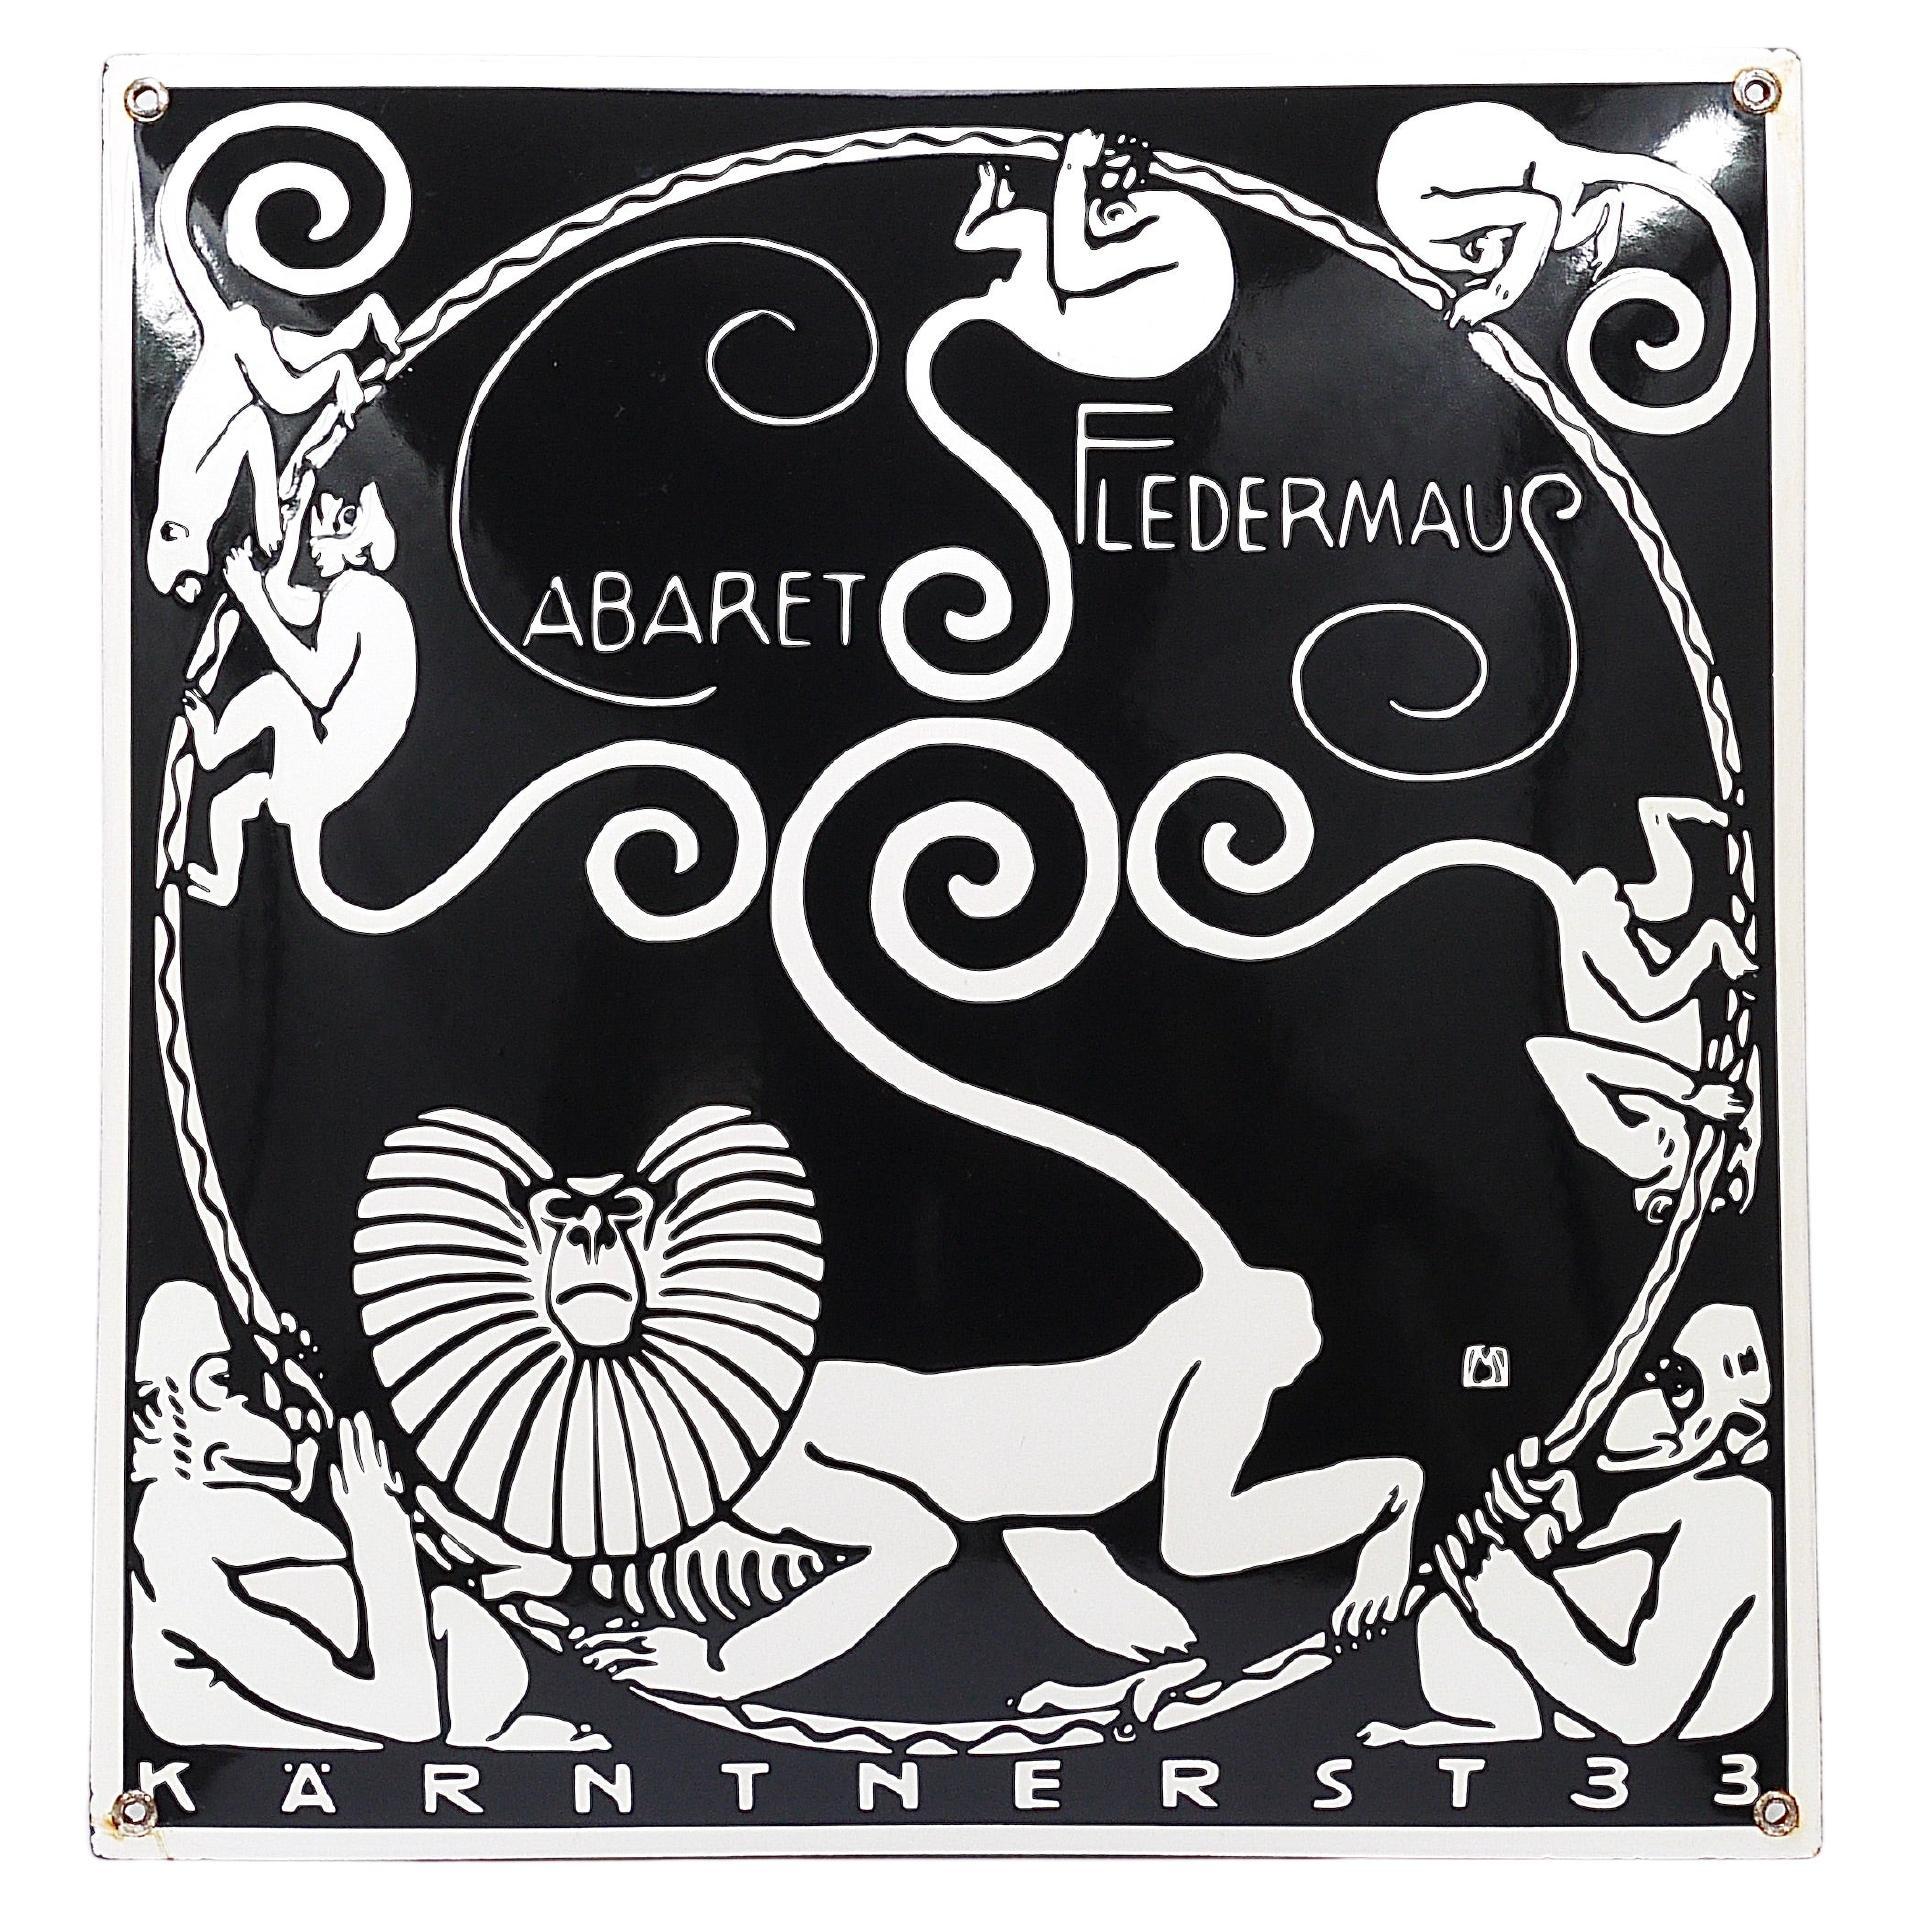 Panneau publicitaire émaillé Art Nouveau du cabaret Fledermaus Vienna de Moriz Jung